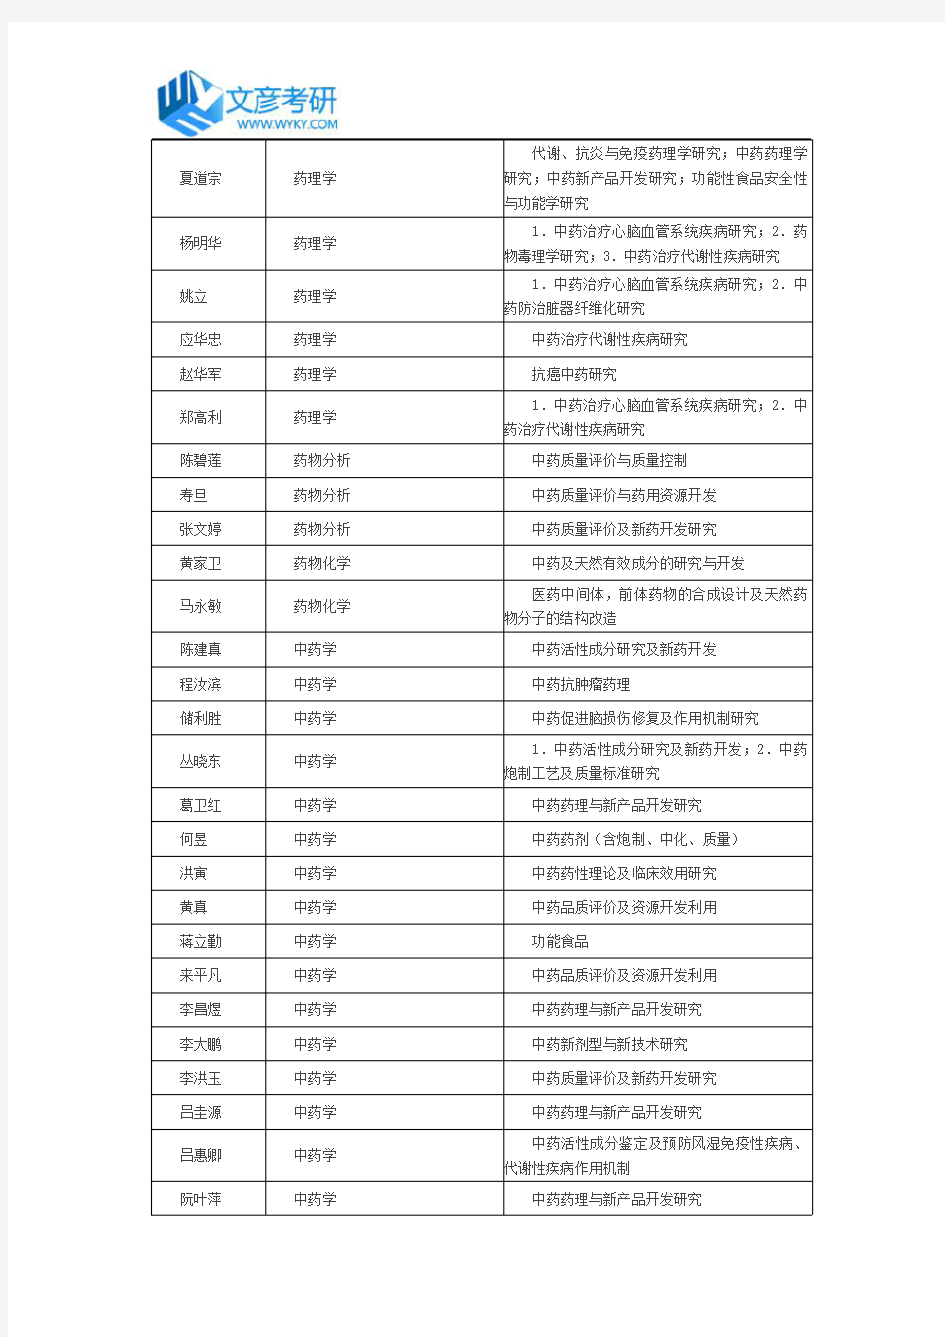 浙江中医药大学2016年药学院导师名单